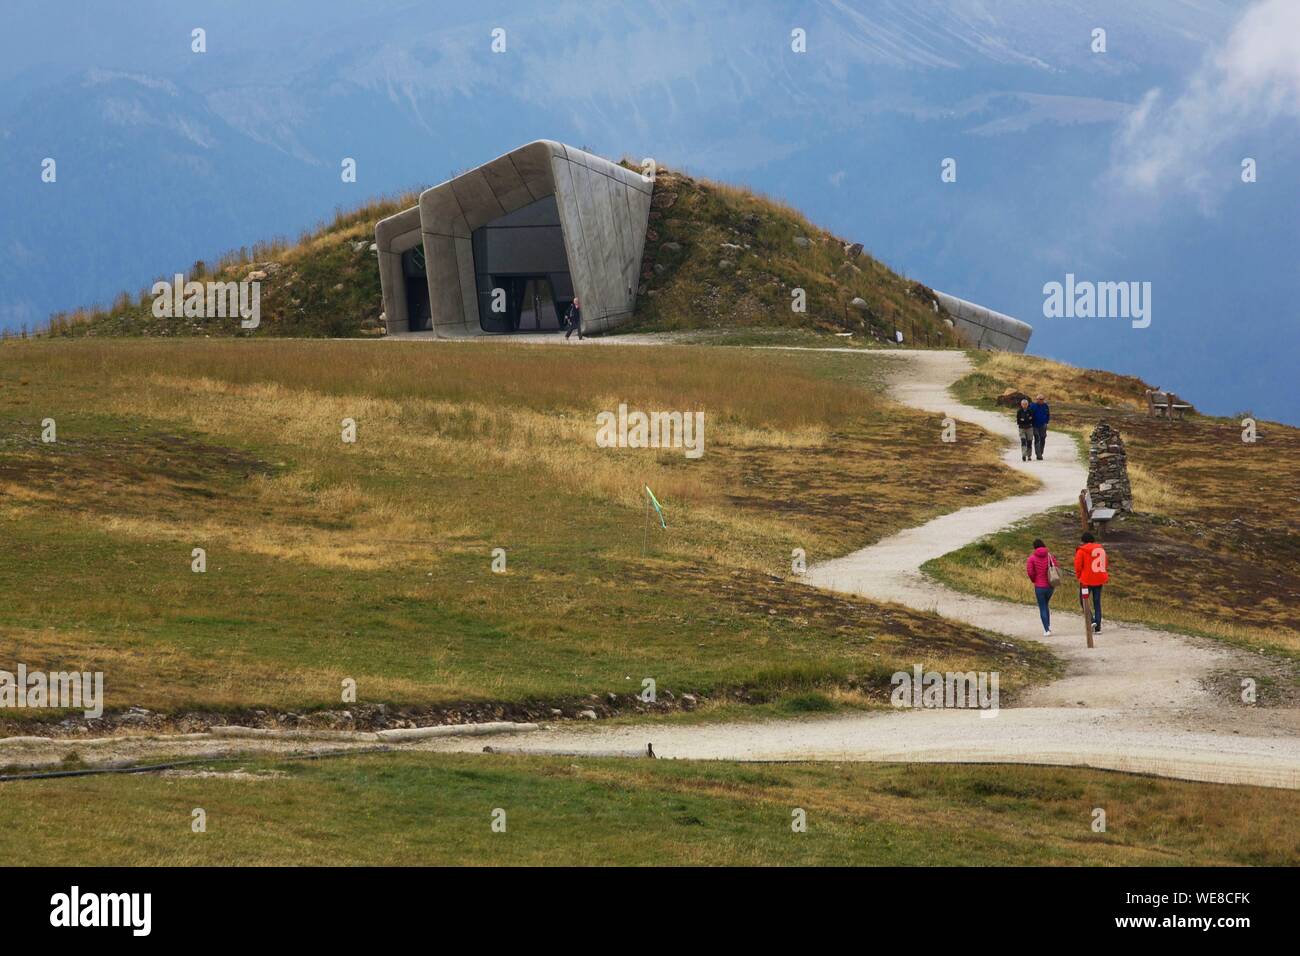 Italie, province autonome de Bolzano, Val Pusteria, les randonneurs sur un sentier accédant à la Messner Mountain Museum, musée futuriste signée Zaha Hadid perché au sommet d'une montagne et dédié à l'alpiniste et alpiniste Reinhold Messner Banque D'Images